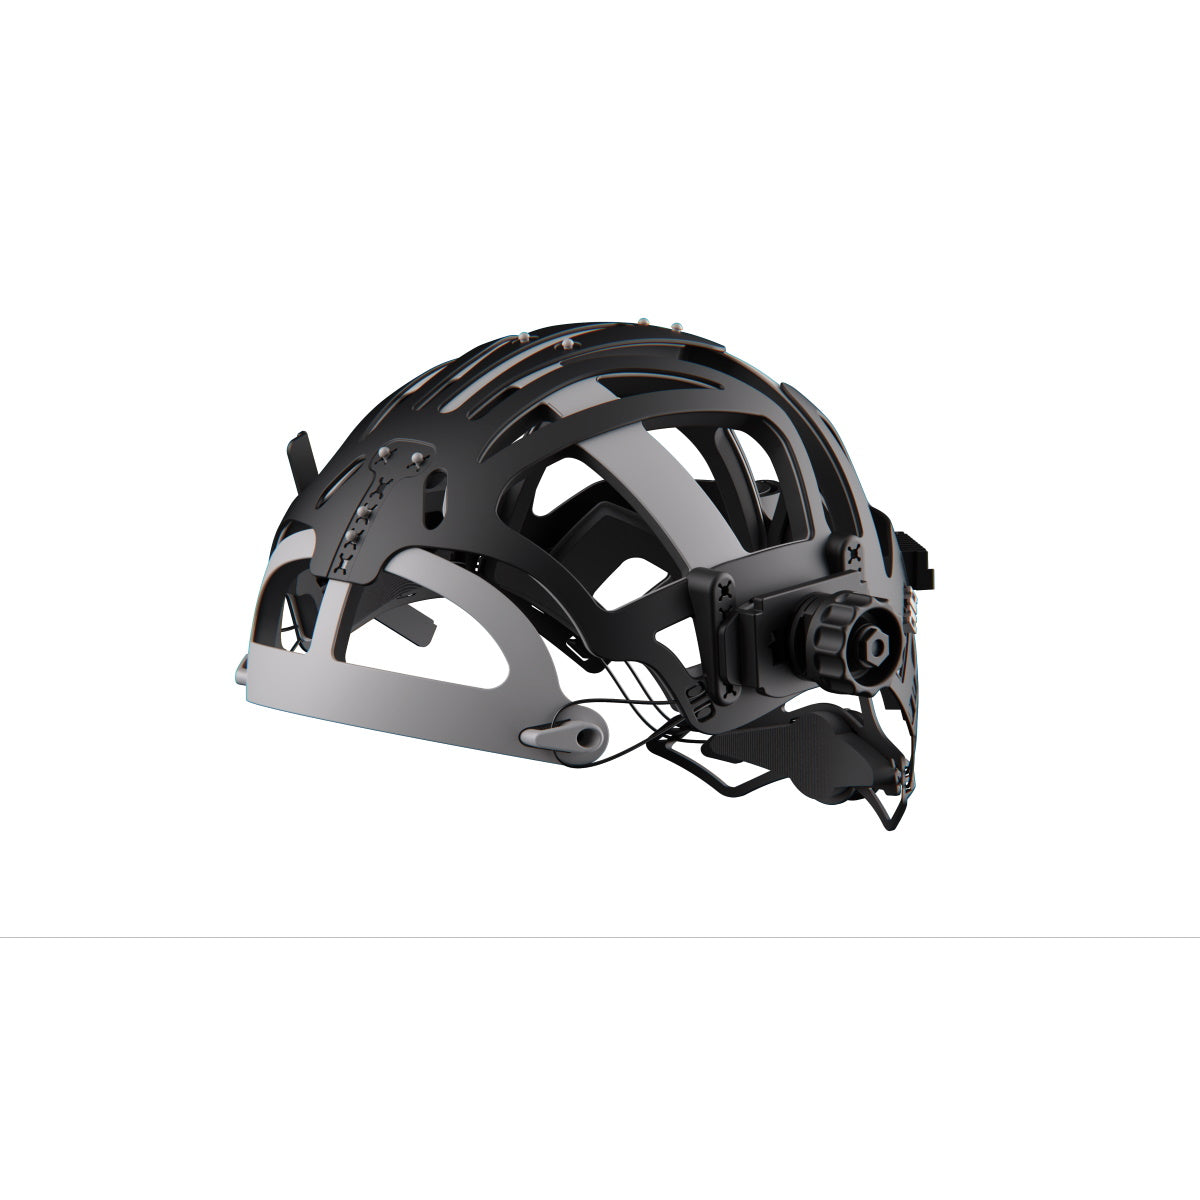 Optrel Helix CLT Welding Helmet for sale (1050.200) Buy at Welding Supplies  from IOC